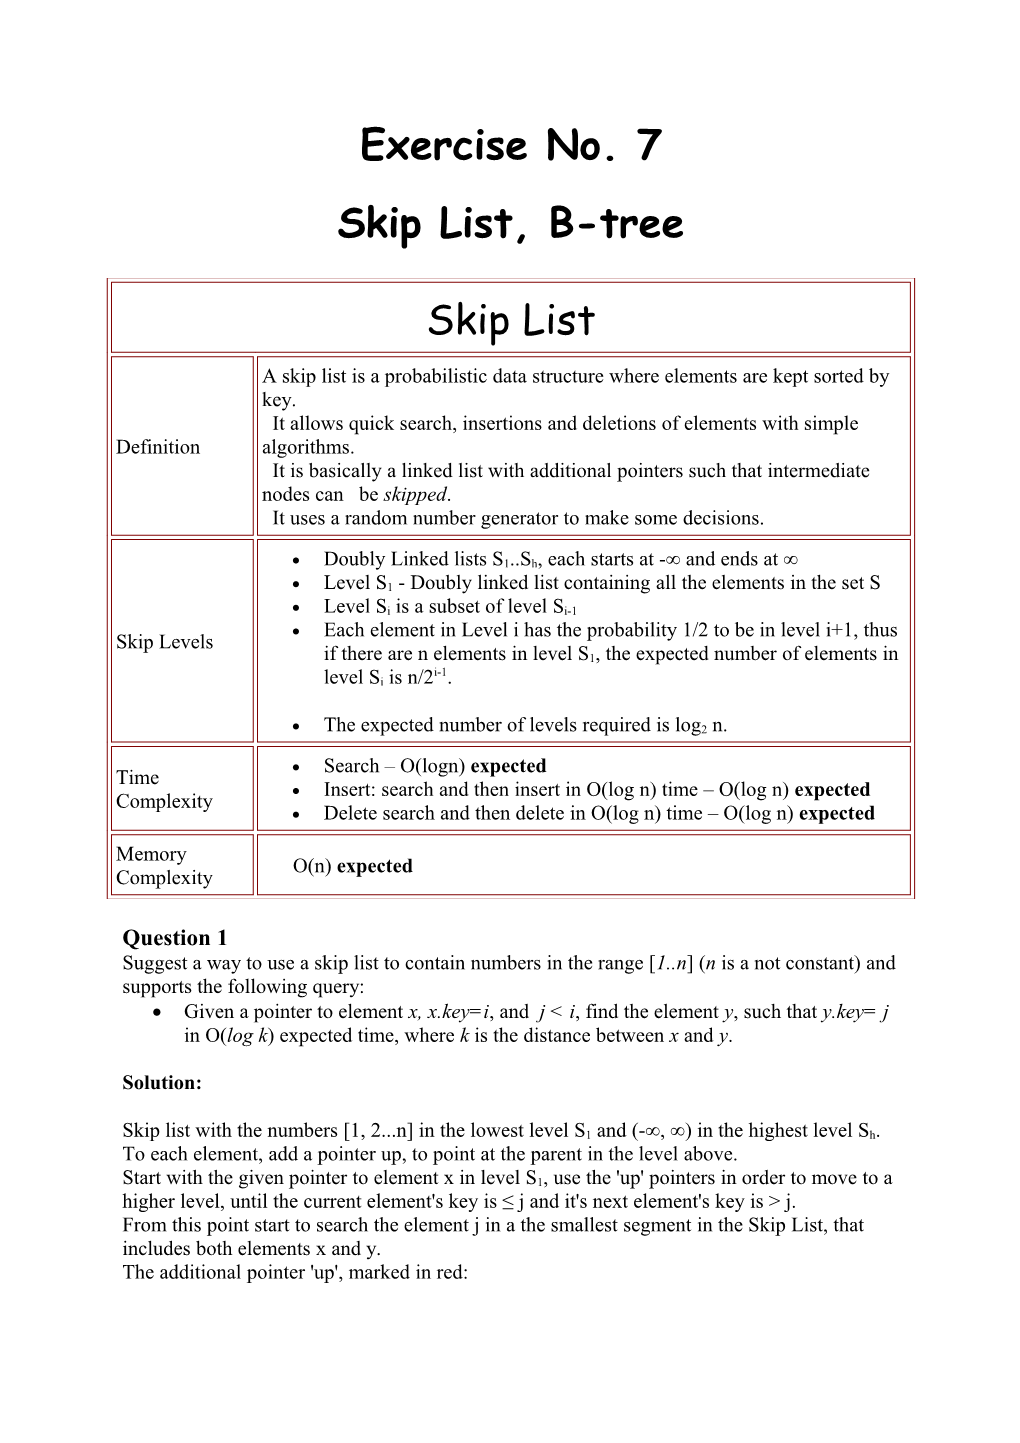 Skip List, B-Tree